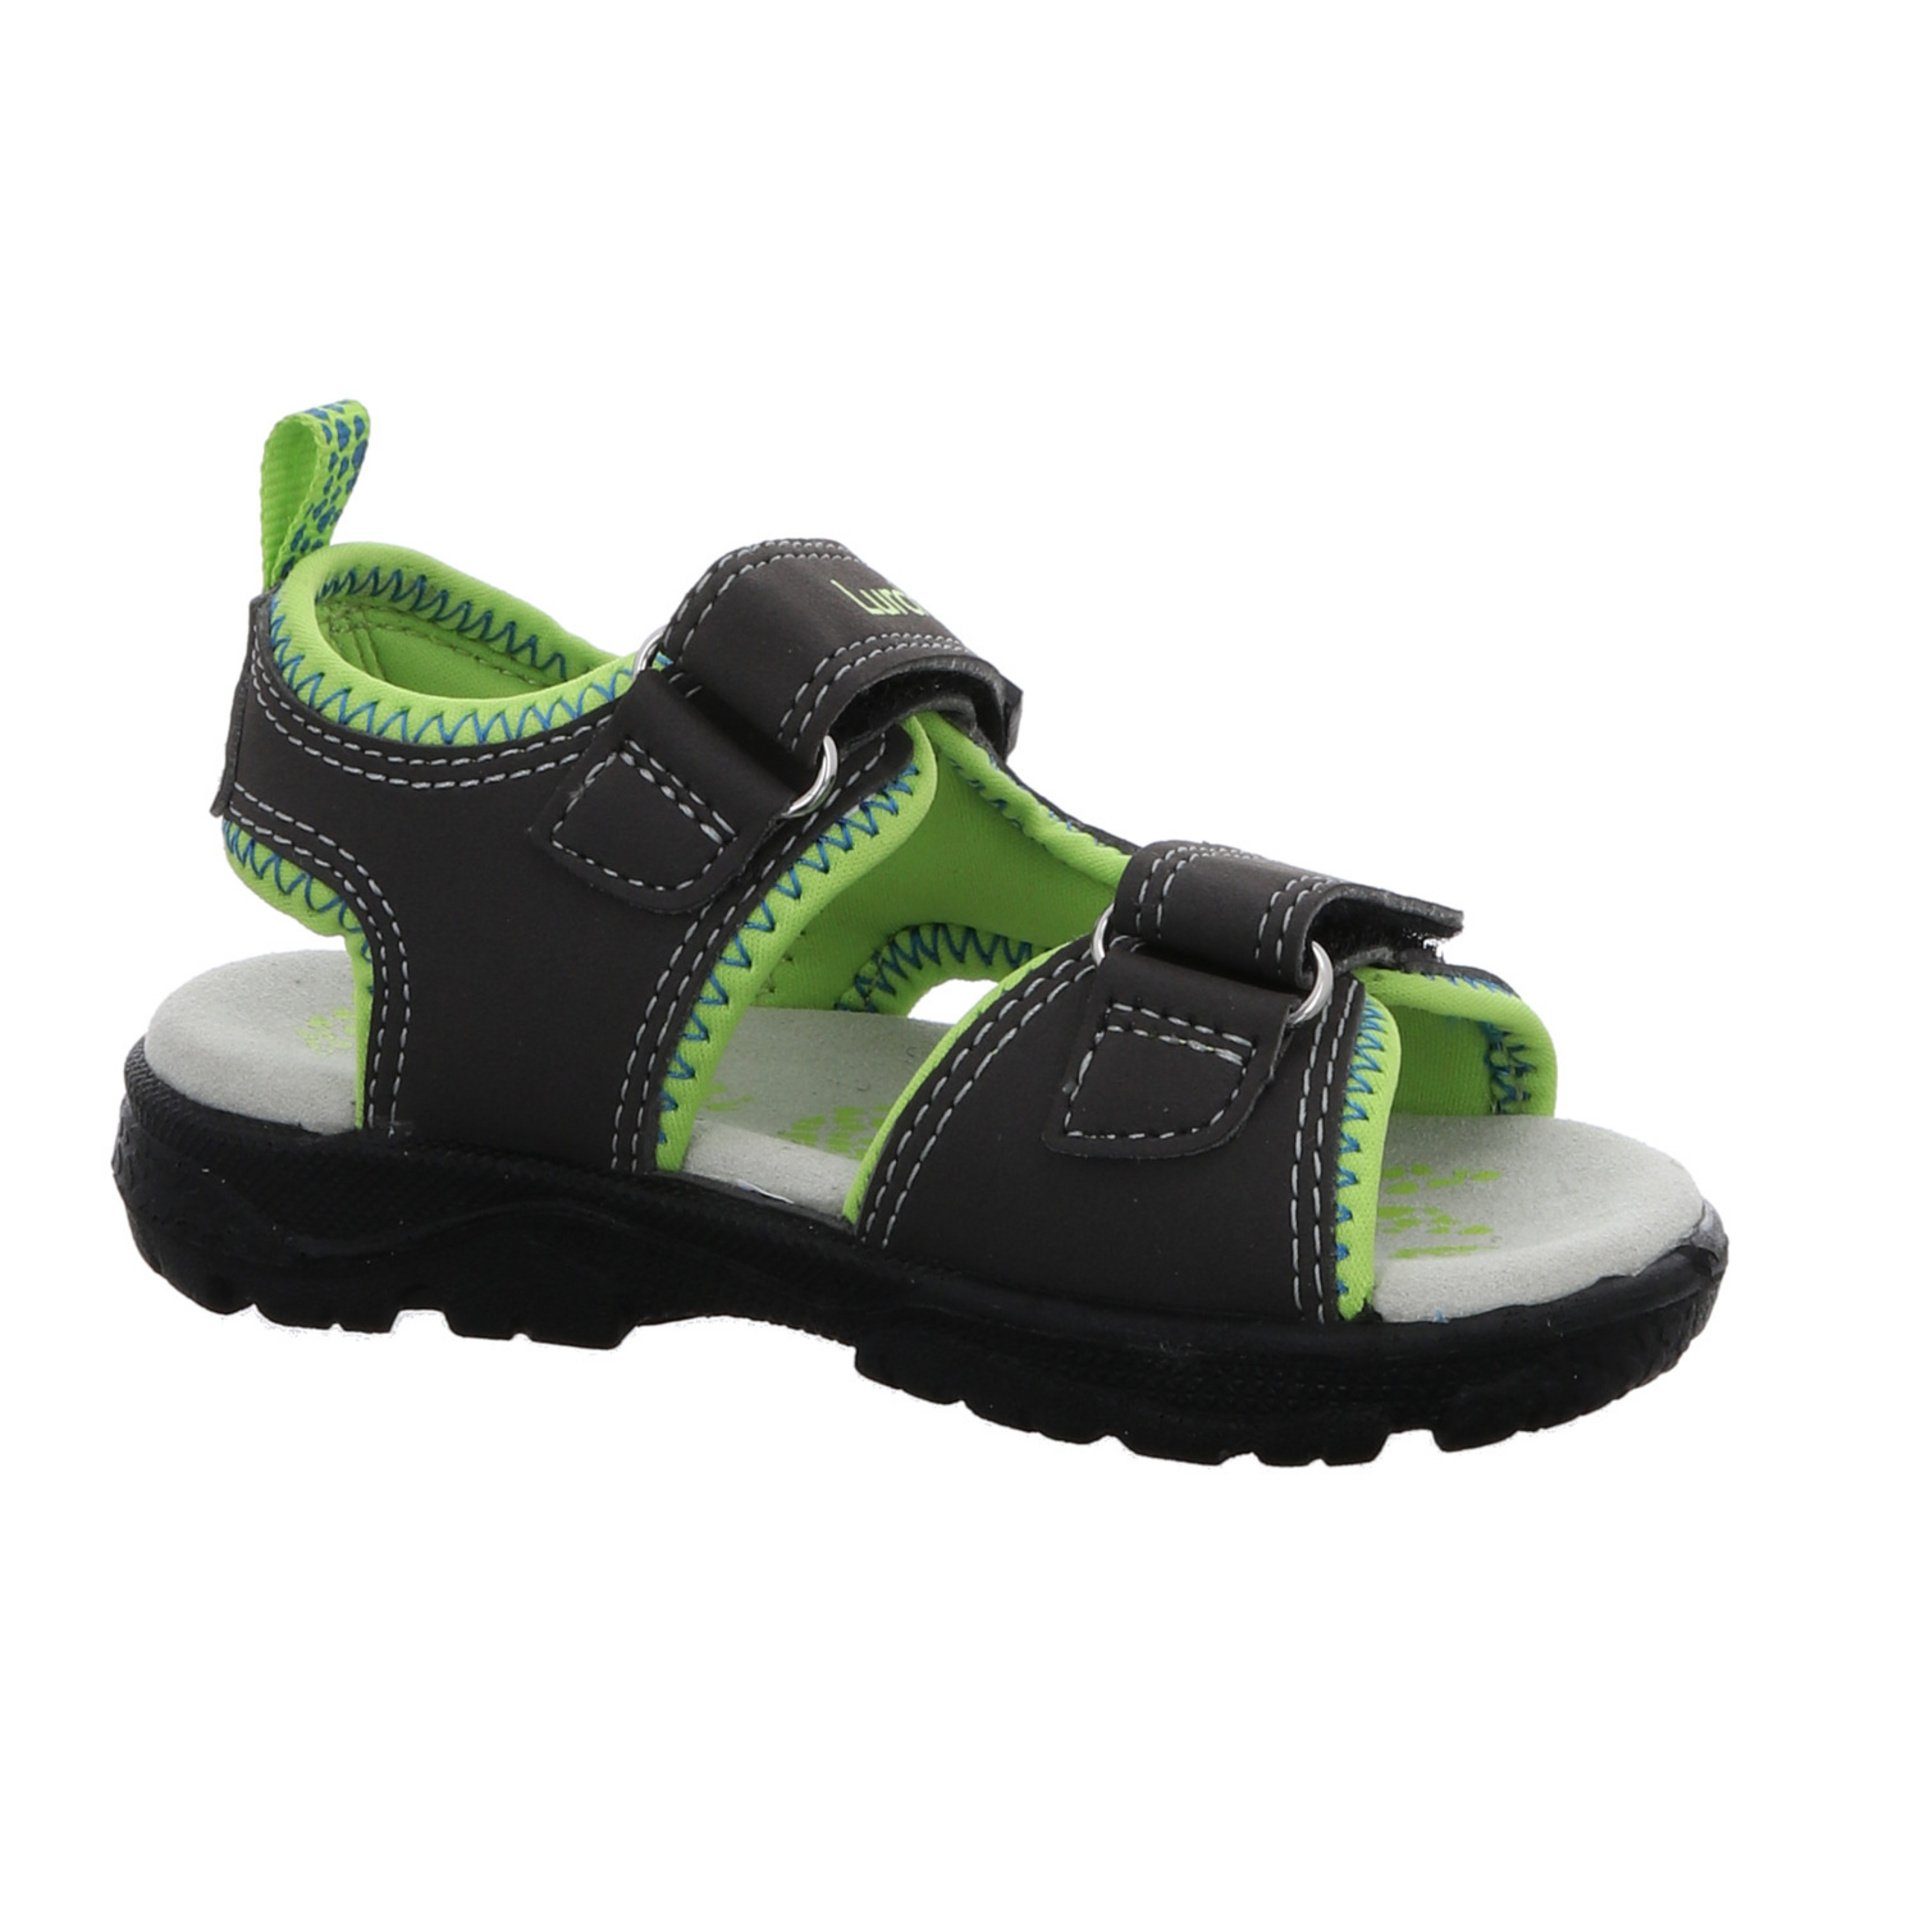 Jungen Sandale Sandale Kinderschuhe Schuhe Kelto Synthetikkombination Lurchi Sandalen